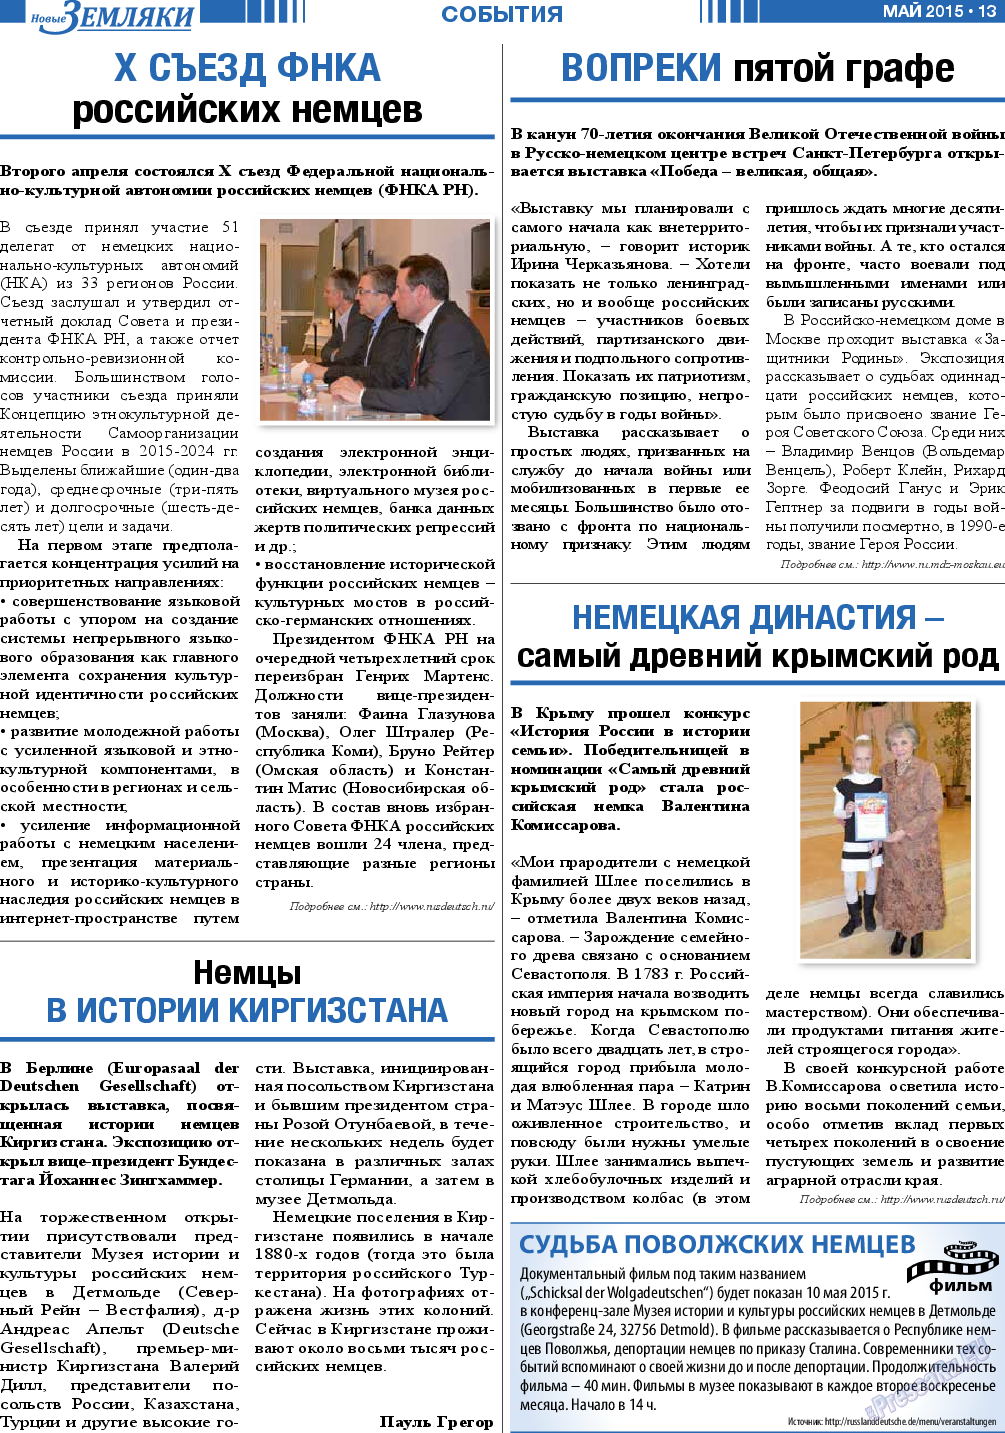 Новые Земляки (газета). 2015 год, номер 5, стр. 13